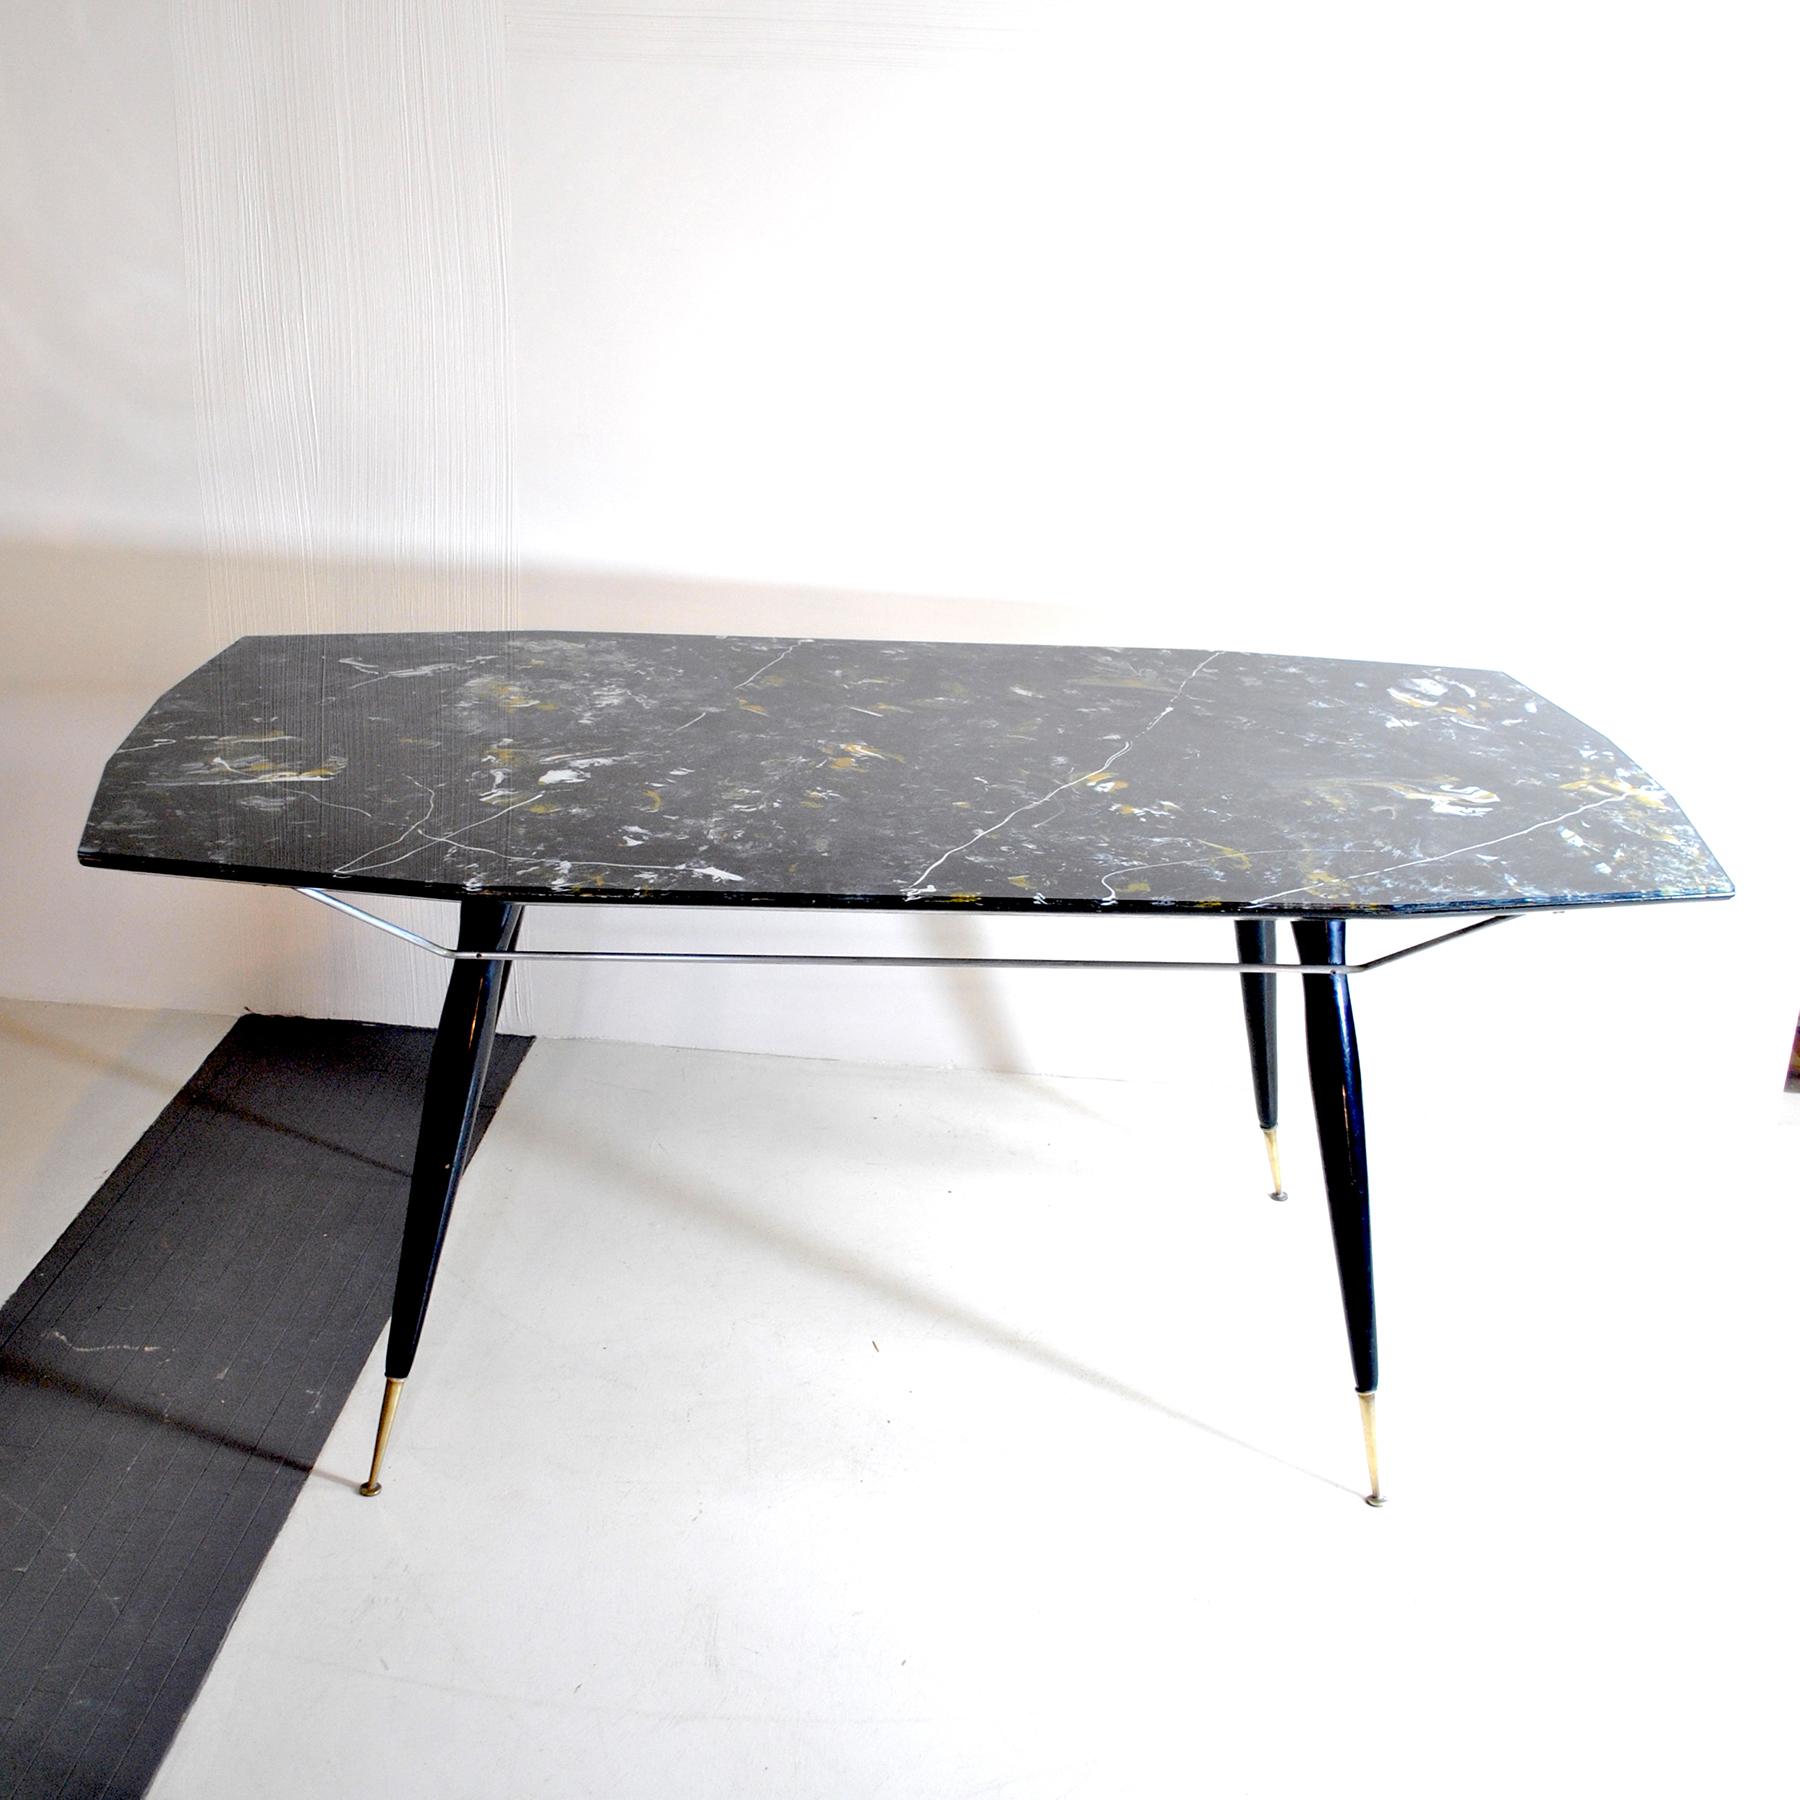 Table avec pieds en bois et borne en laiton, sur le dessus en verre restro moulé représentant du marbre noir de Carrare.
Bien qu'elle ne soit attribuée à aucun designer de l'époque, cette table présente de nombreuses caractéristiques qui laissent